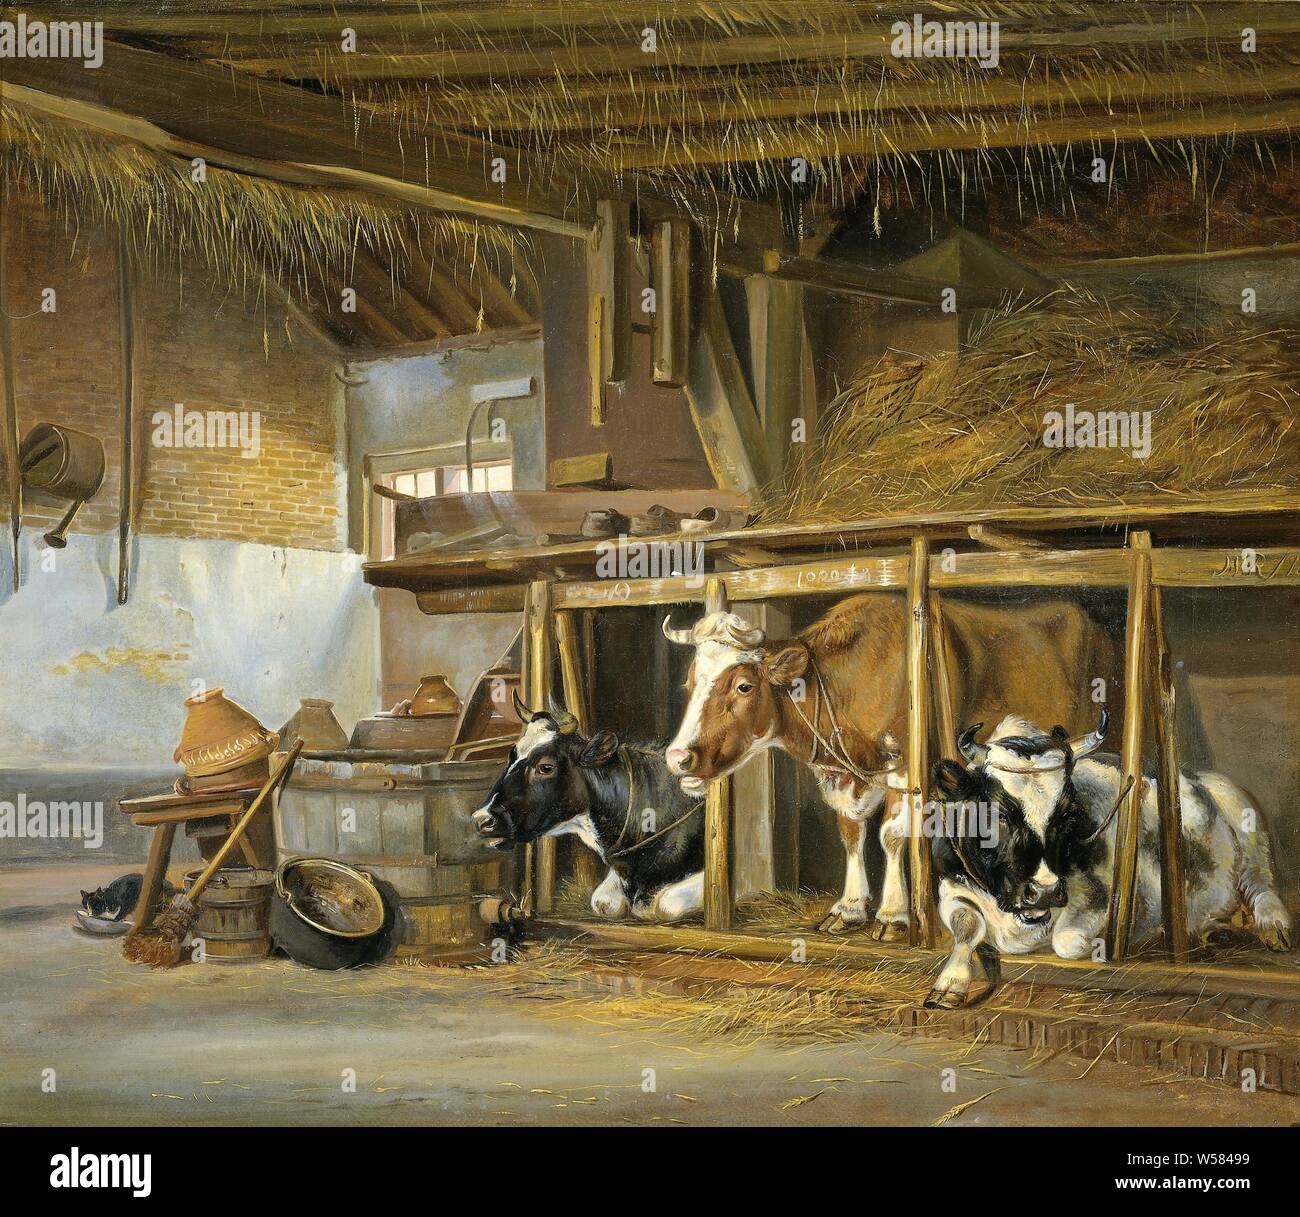 Vaches dans une étable, de l'intérieur d'un pays stable avec trois vaches. Sur la gauche, seaux, bouilloires et un chat qui boit du lait., Jan van Ravenswaay, 1820, toile, de la peinture à l'huile (peinture), h 39,1 cm × 46,4 cm × w t 2.2 cm d 9 cm Banque D'Images